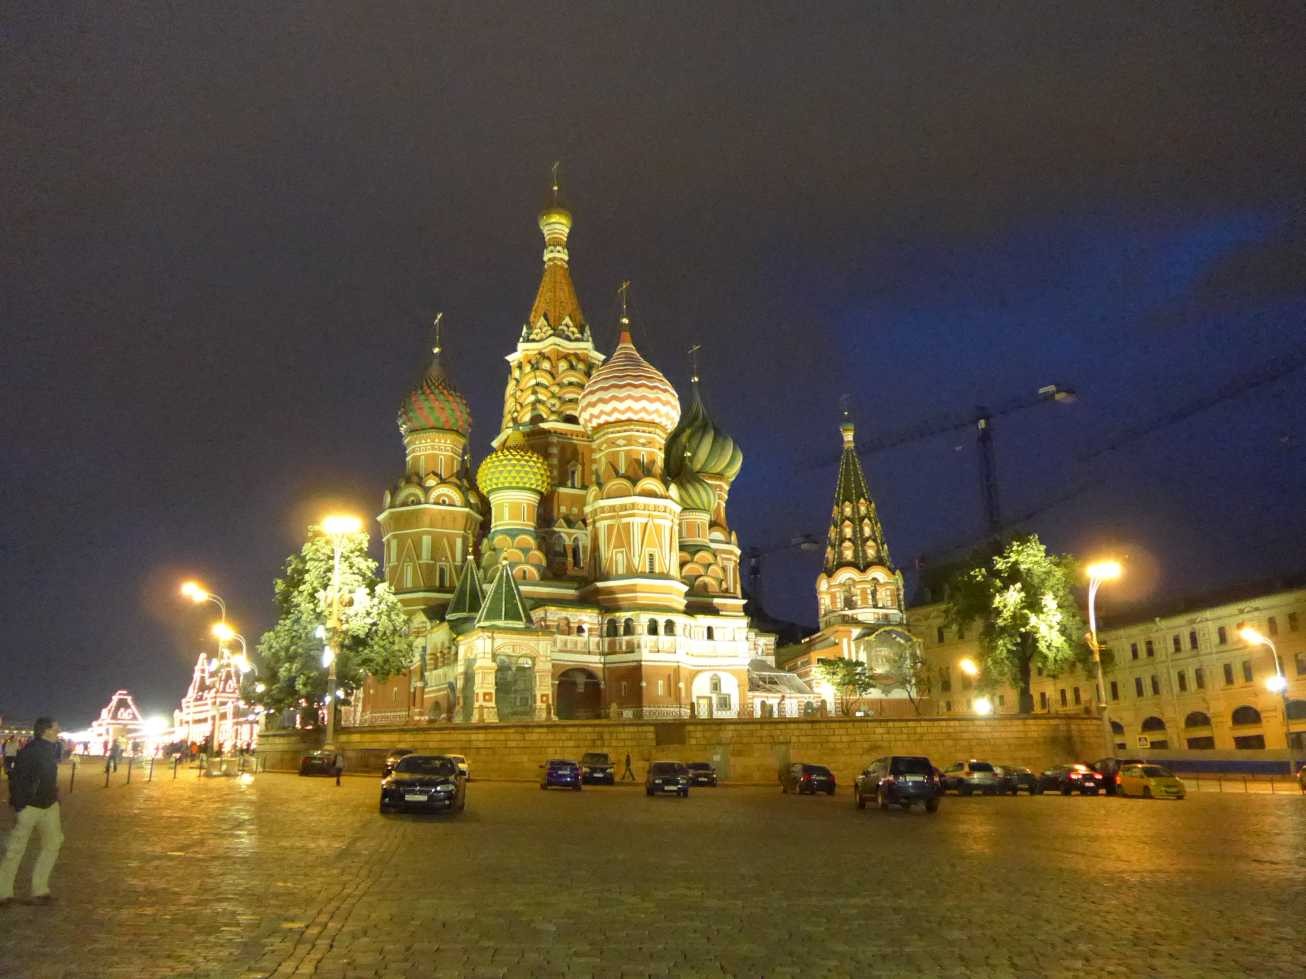 Moskau, Basilius-Kathedrale